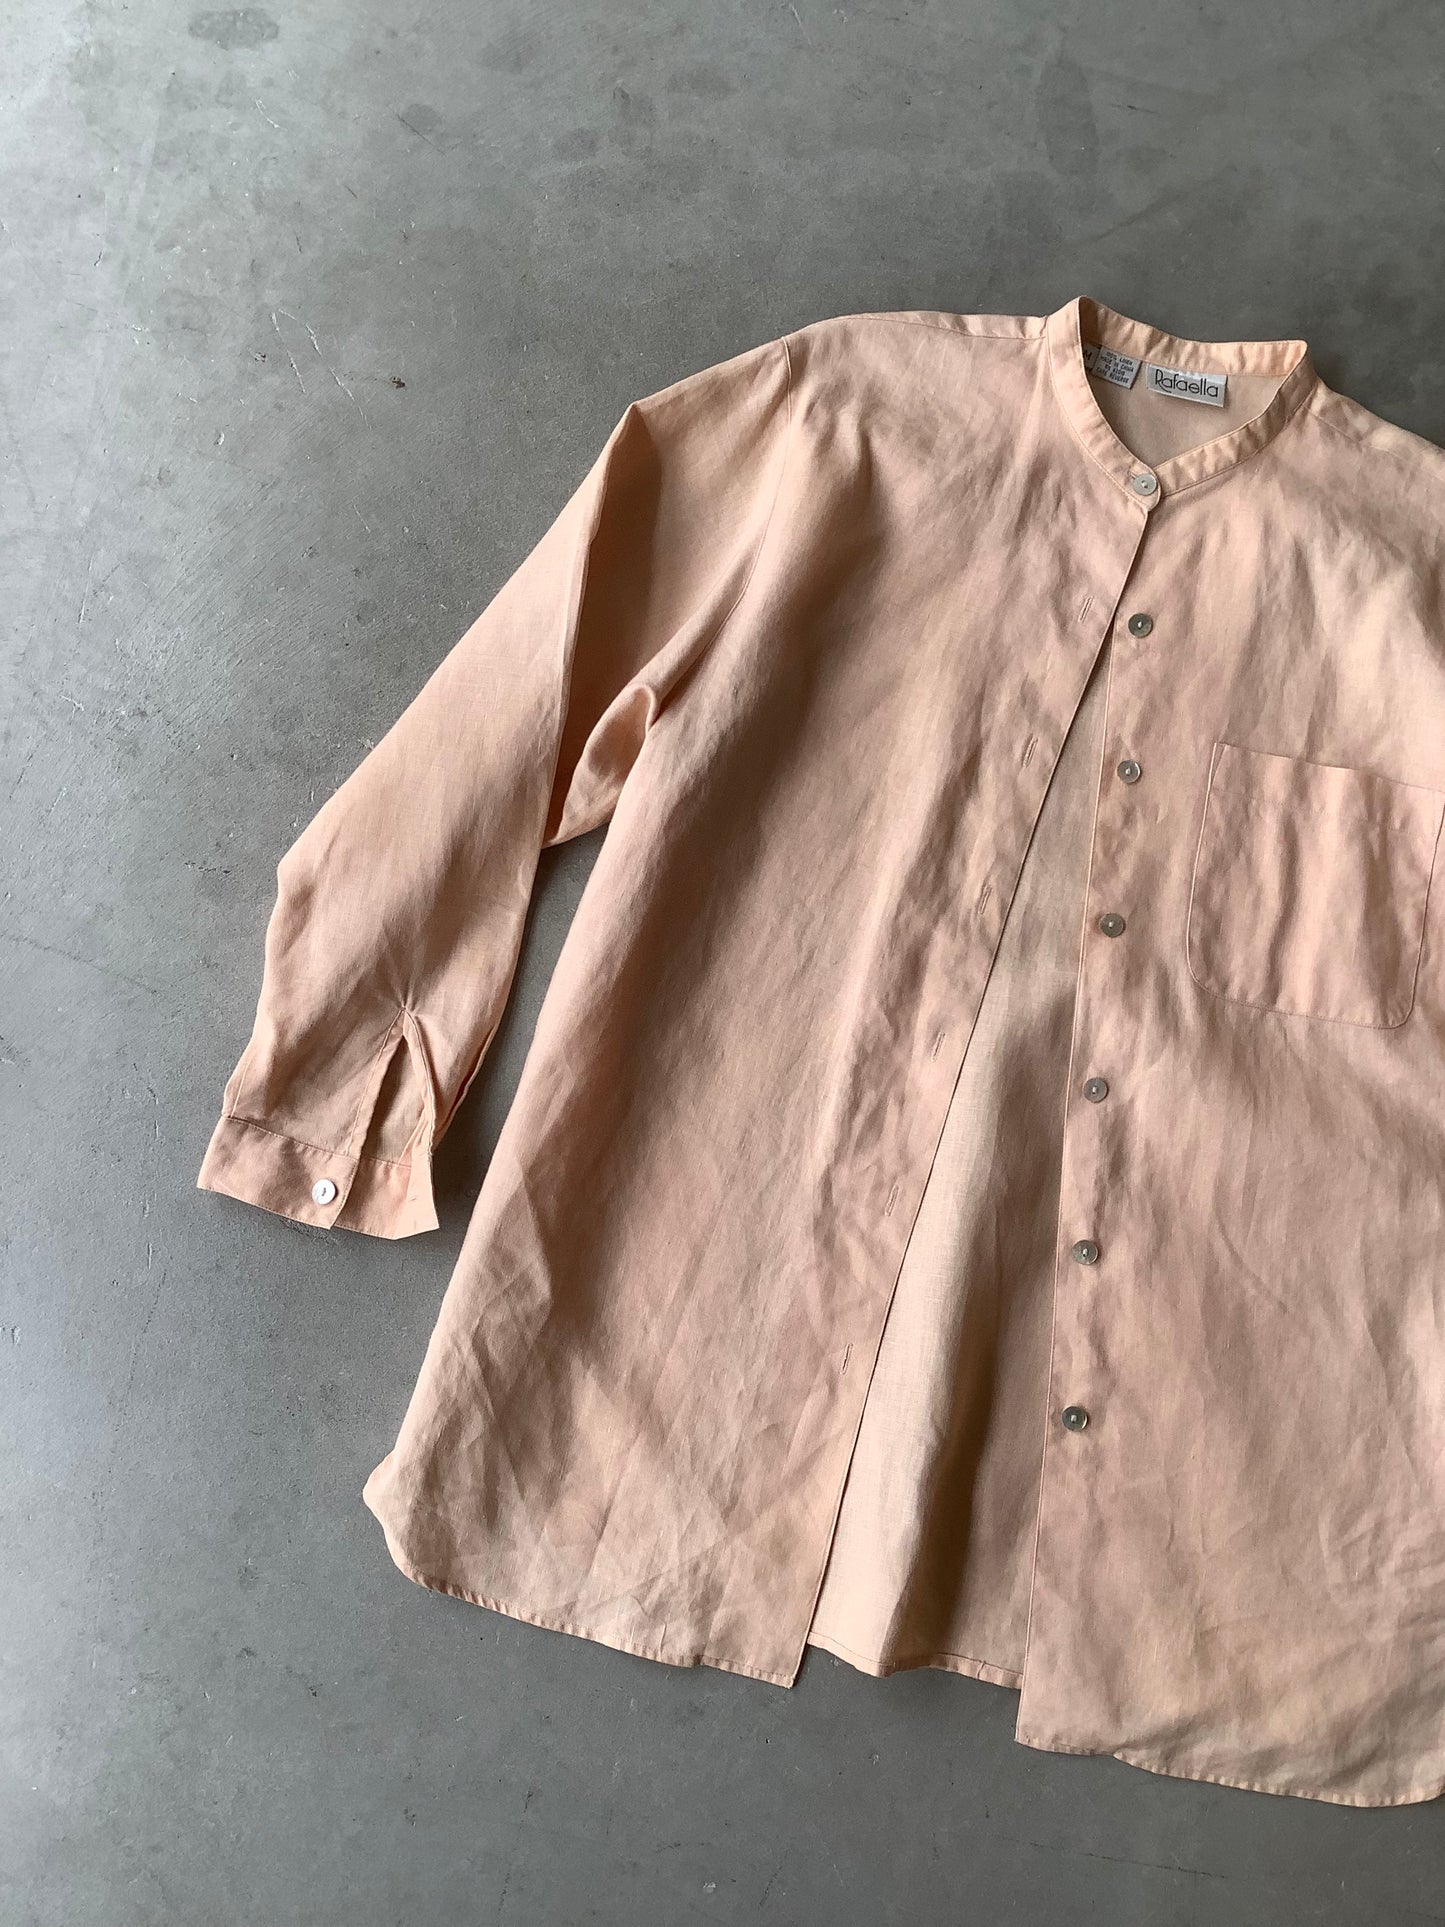 Soft peach linen shirt